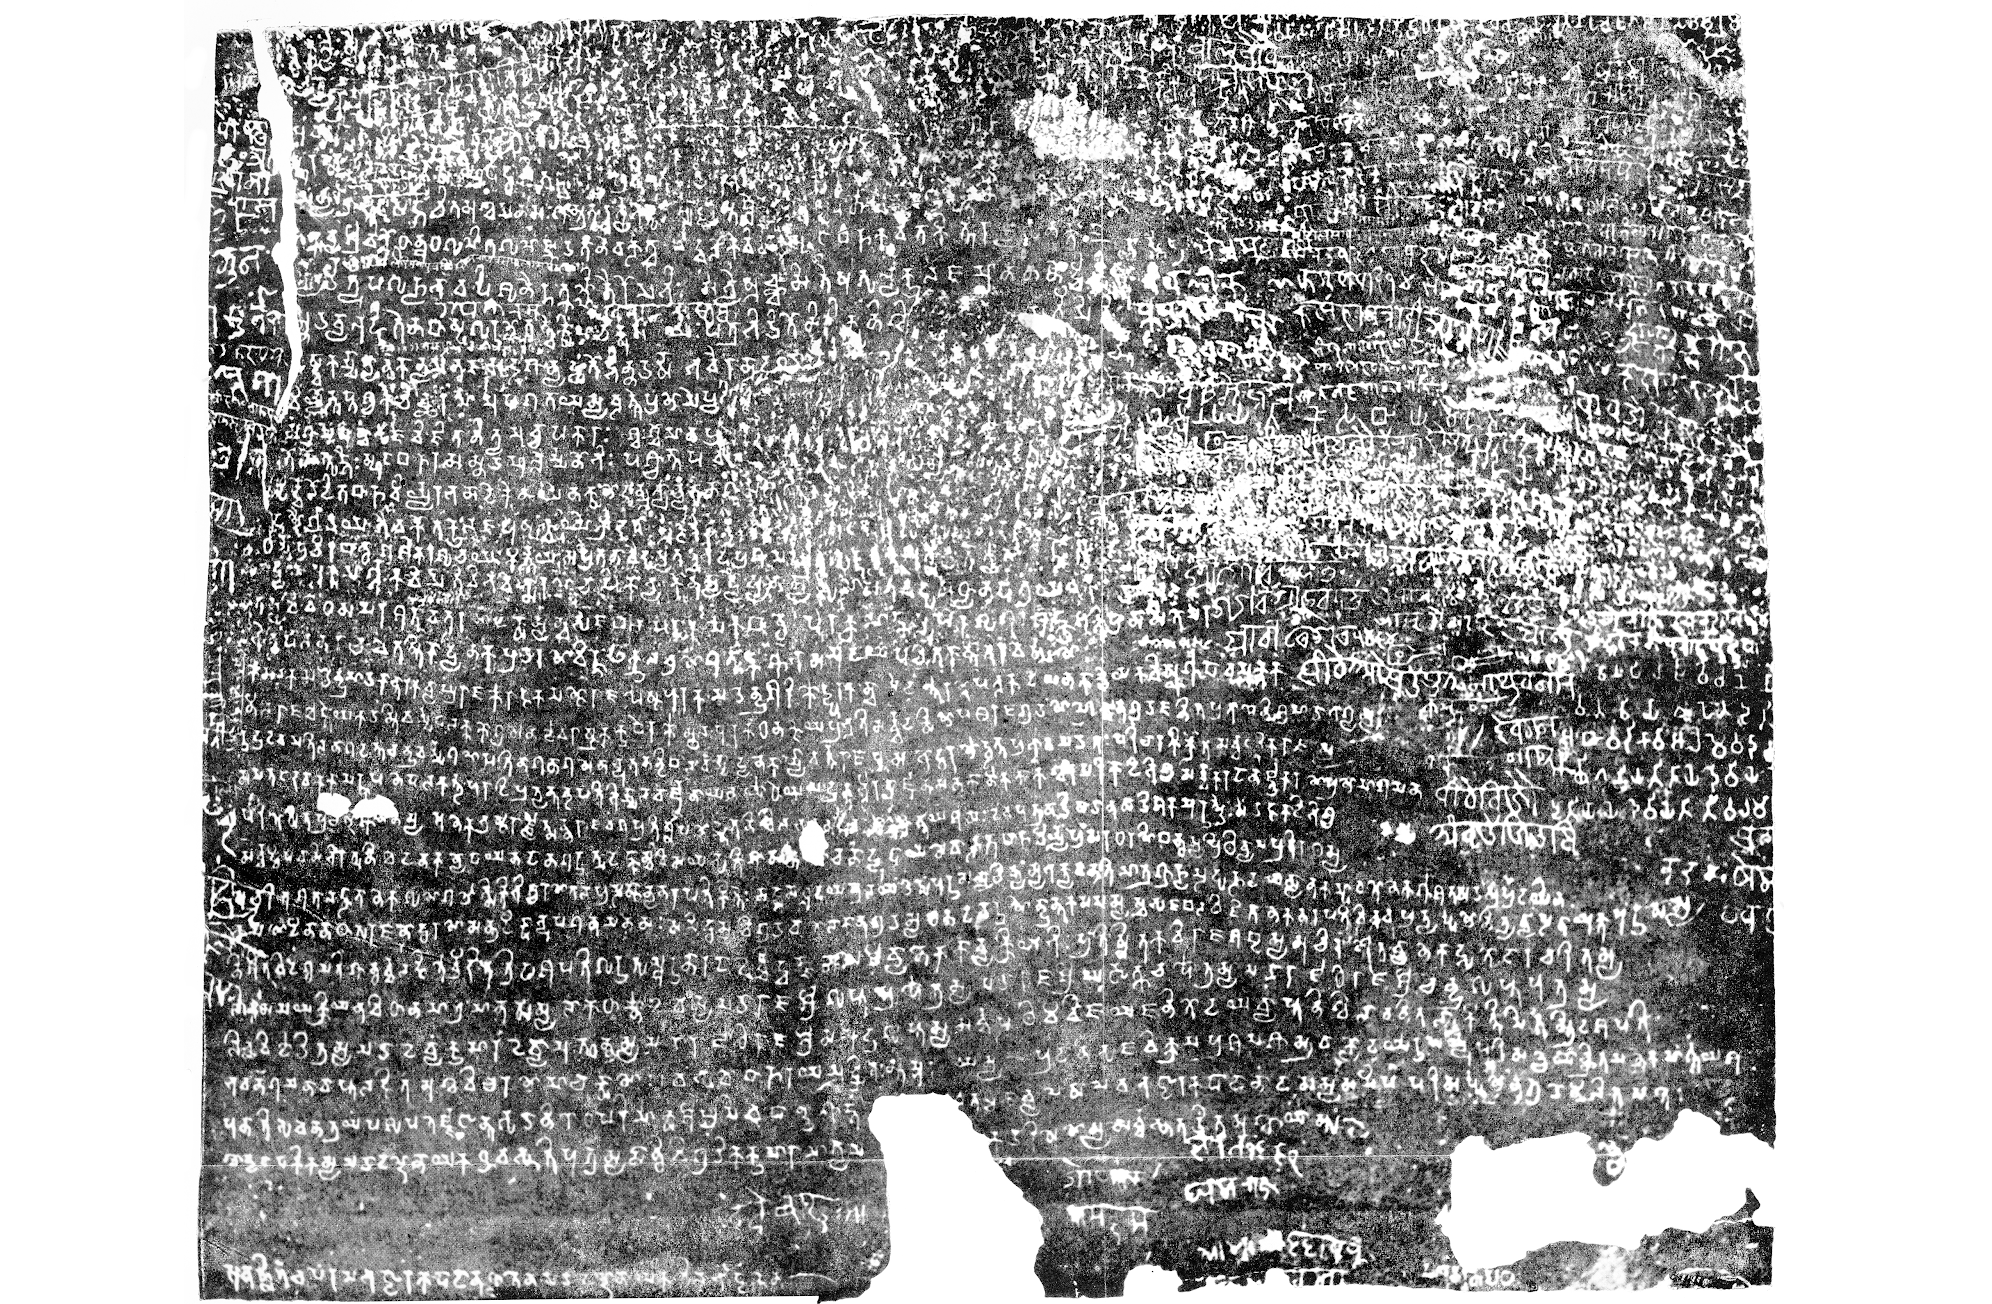 Samudra Gupta’s inscription on the Allahabad Pillar